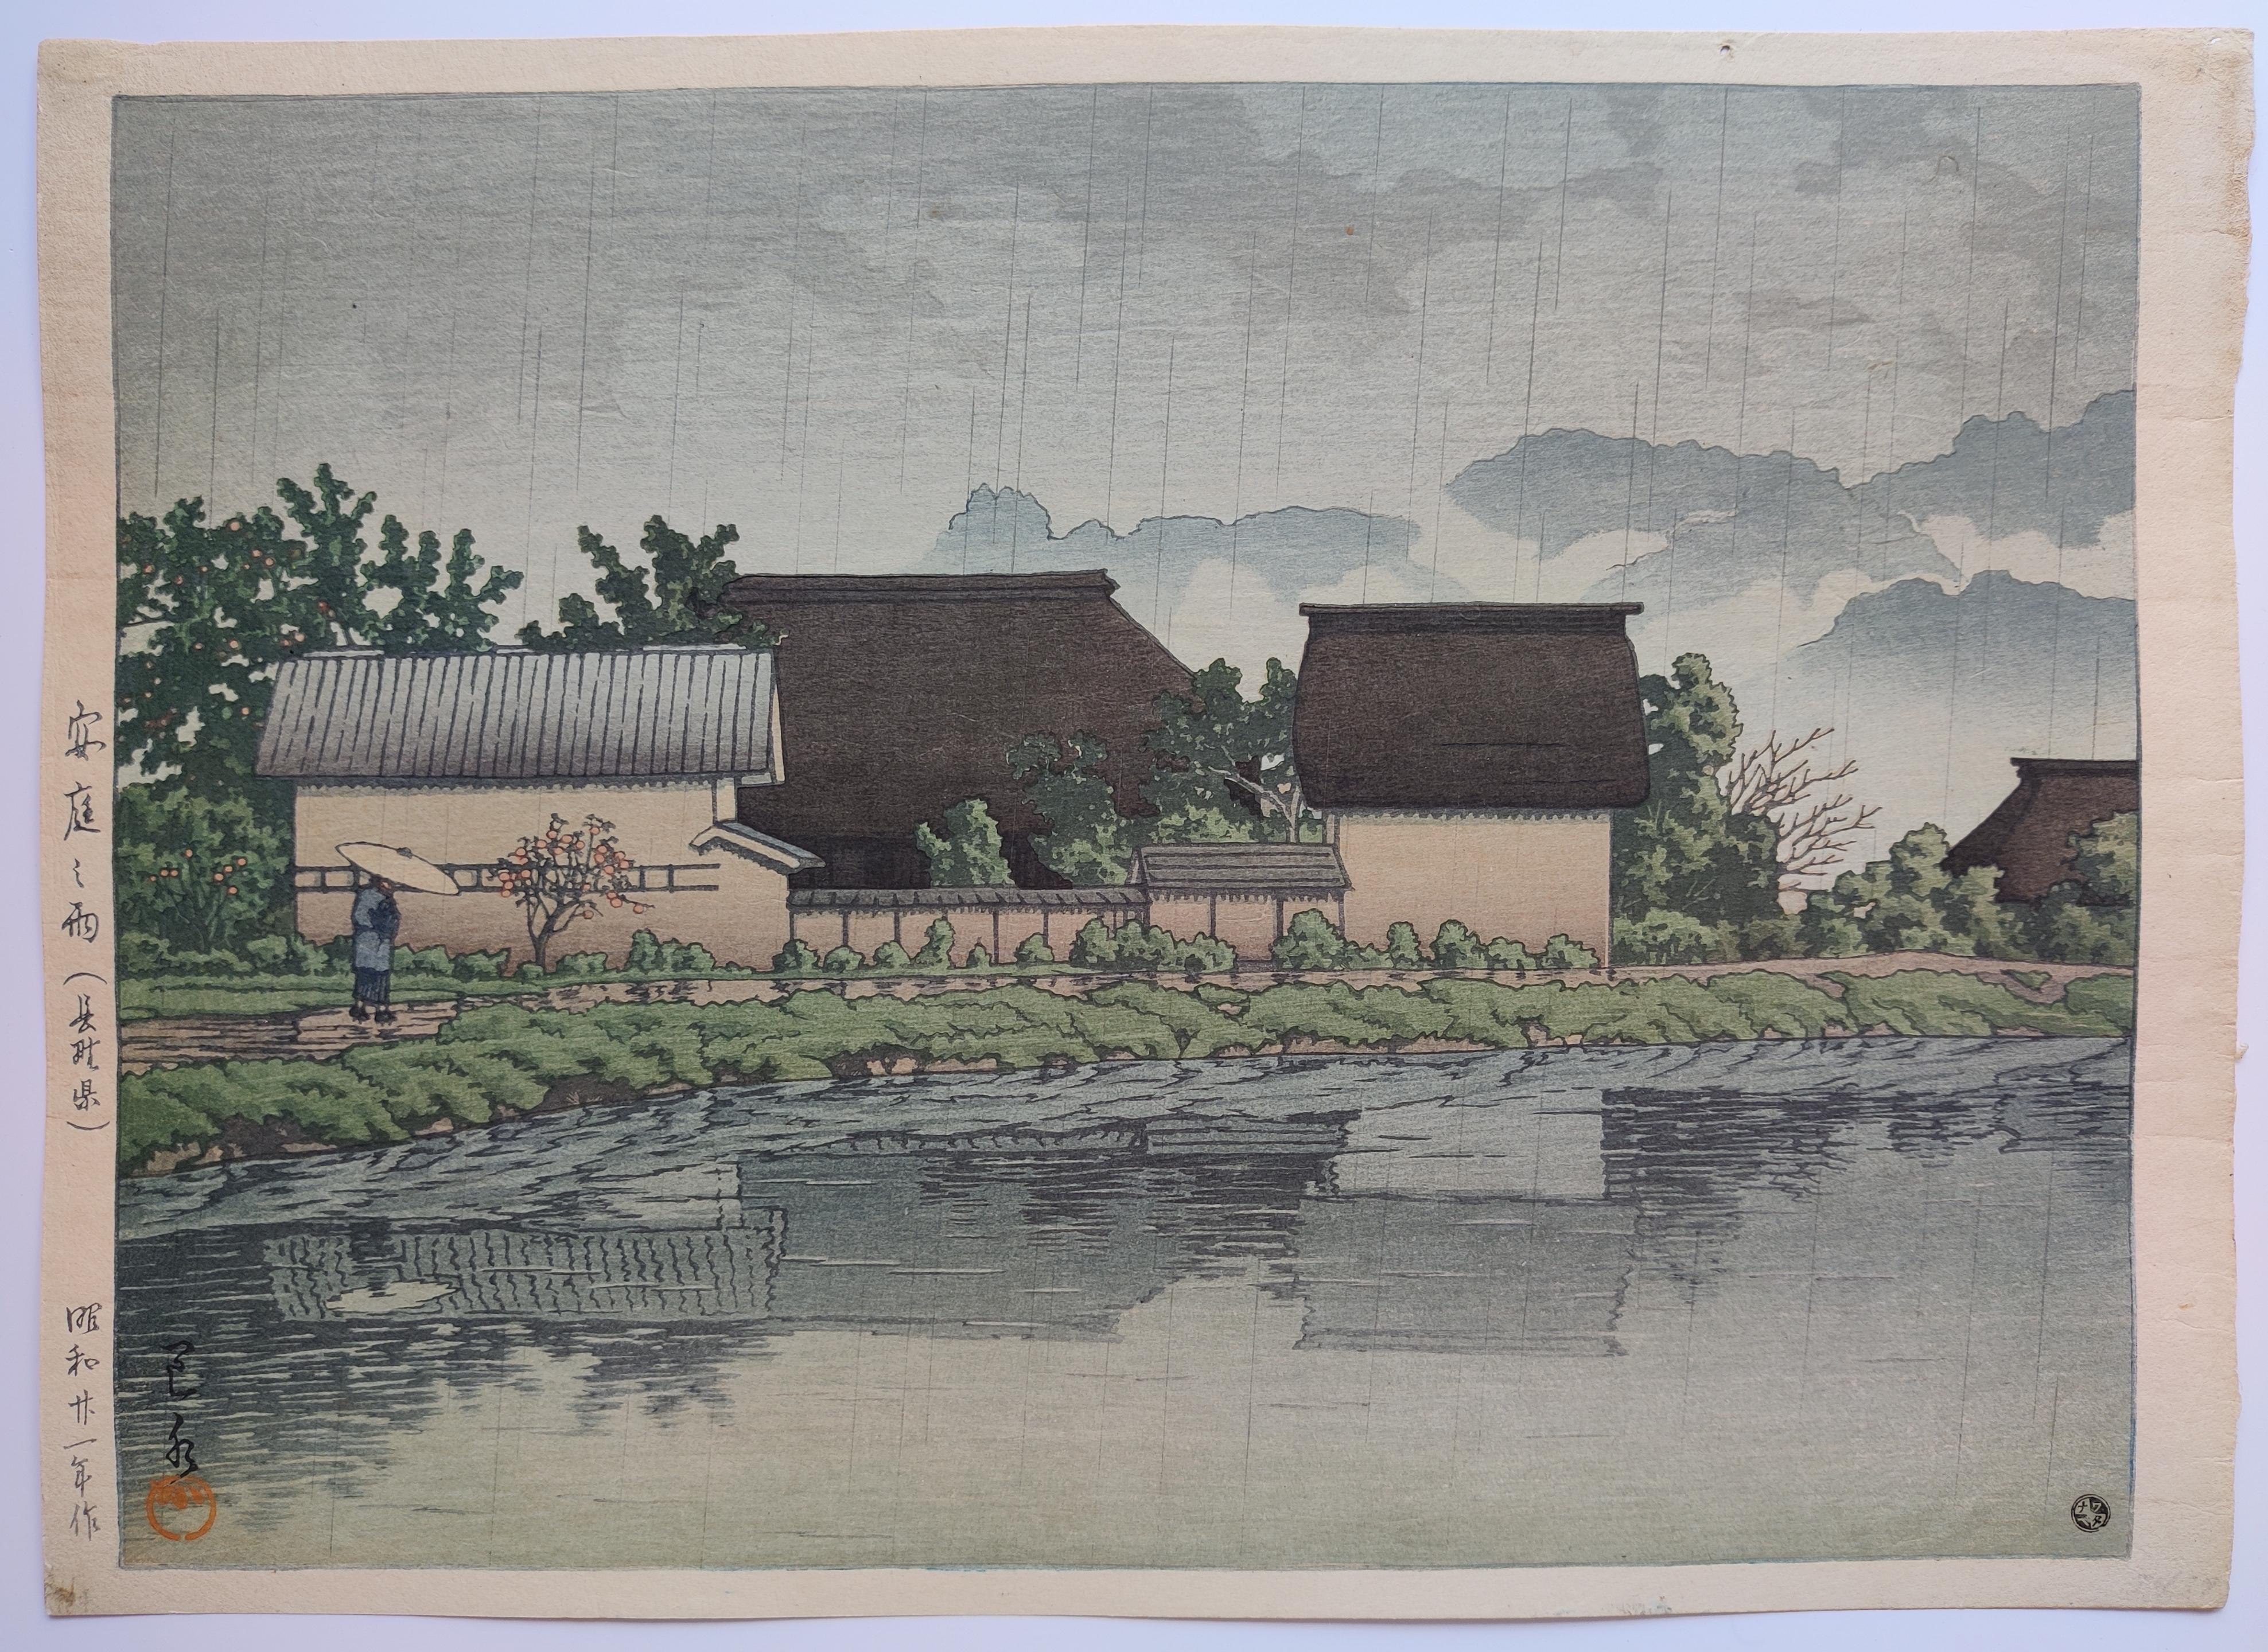 Kawase Hasui
Regen in Yasuniwa (Nagano), 1946
Holzschnitt in Farben
Im Block signiert, gesiegelt, betitelt und datiert mit Tinte
Herausgeber: Shozaburo Watanabe, mit seinem 6-mm-Siegel
Der erste Zustand
Bildgröße: 24,5×33,5cm 
Blattgröße: